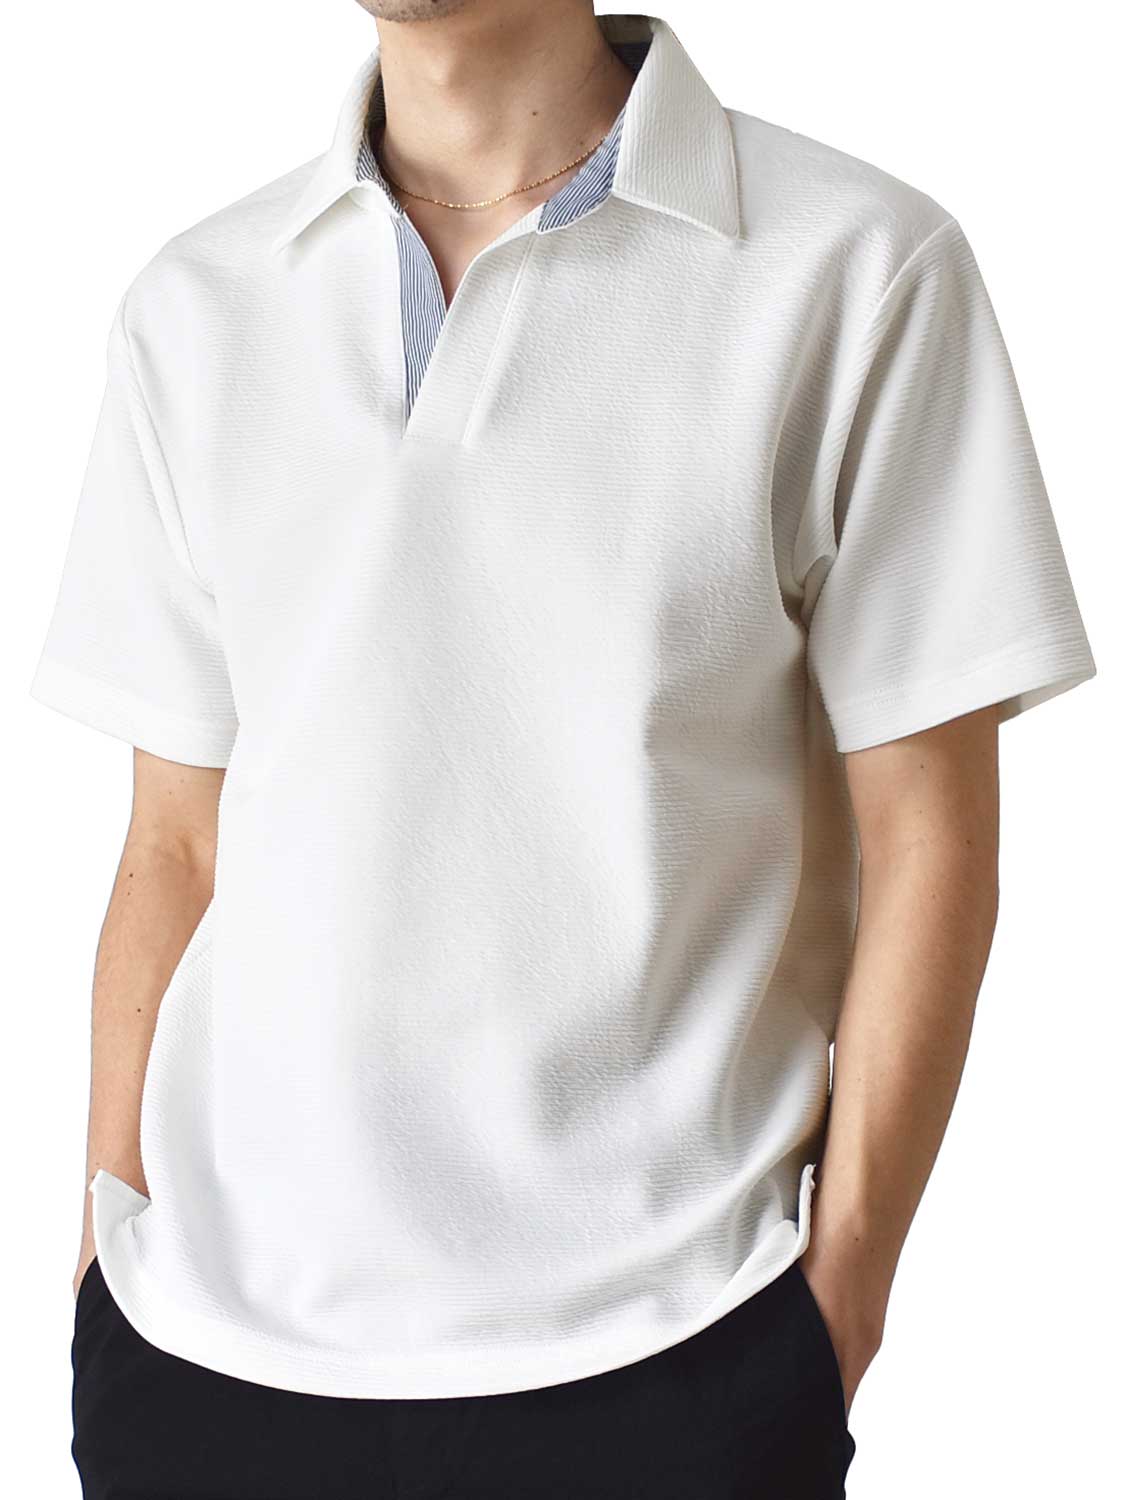 カットソー ポロシャツ メンズ スキッパー 衿切替 リップル素材 送料無料 通販Y